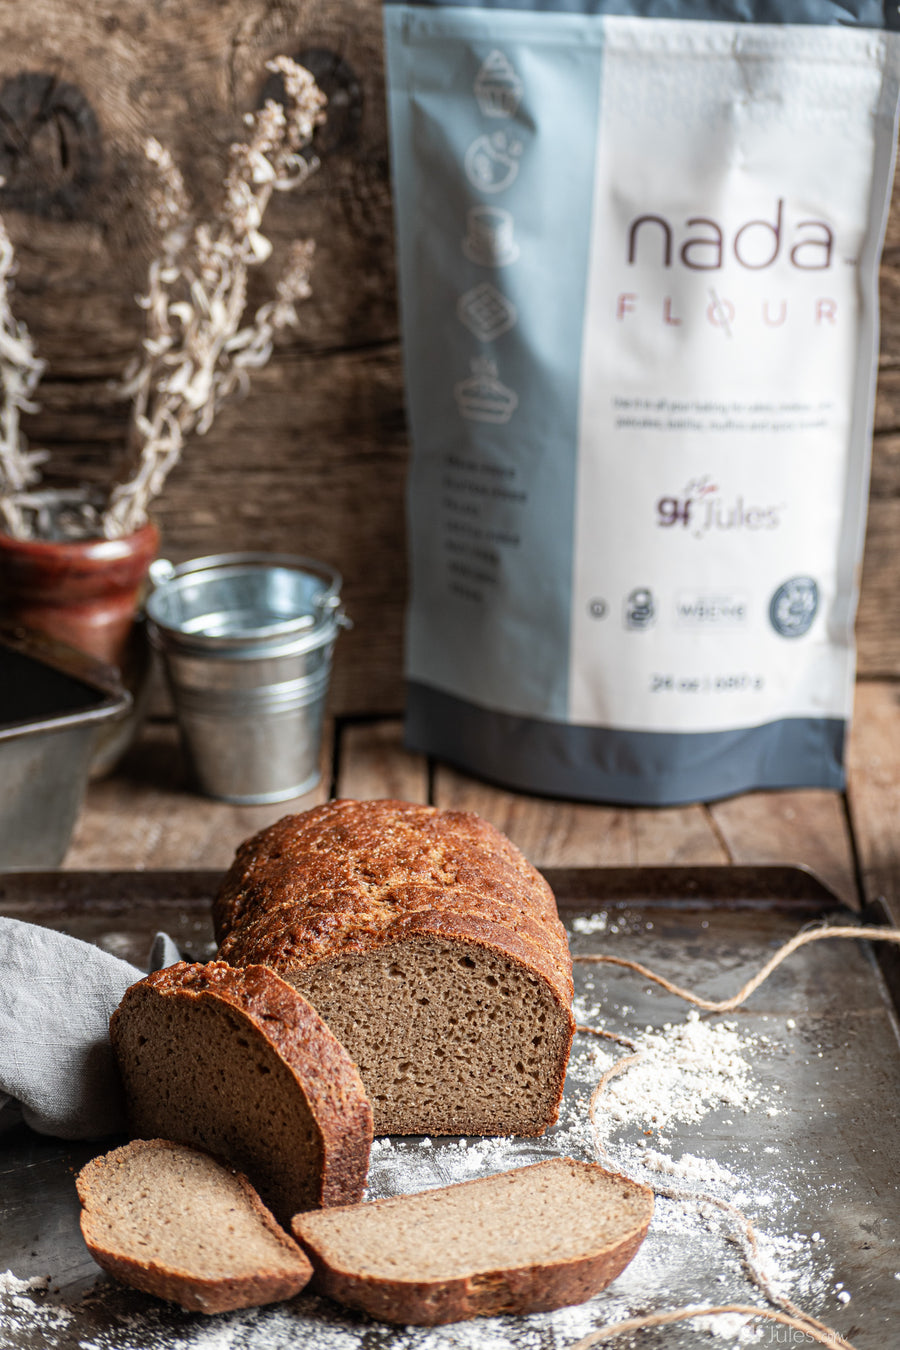 gfJules NADA Flour